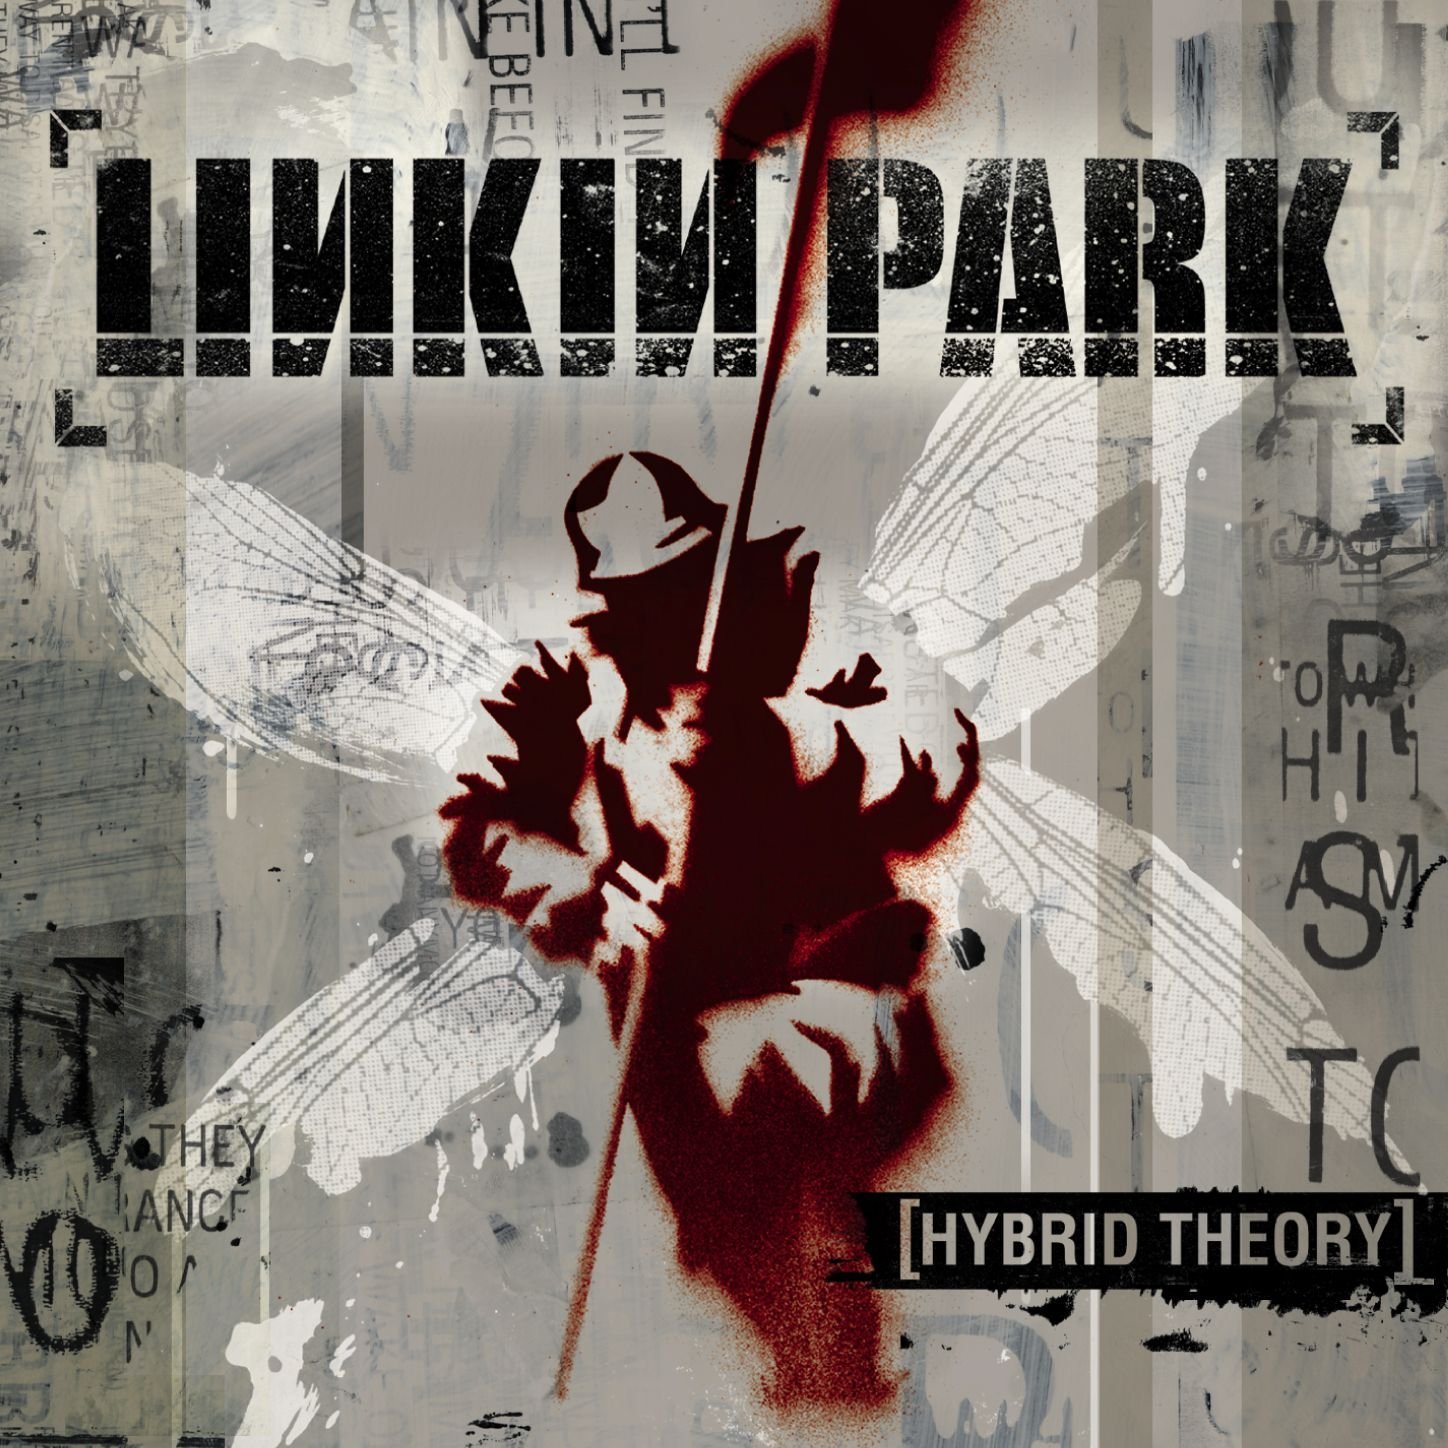 Linkin Park, ‘Hybrid Theory‘ (2000) - 10 millió<br /><br />Sokaknak ez a lemez volt a dobbantó a keményebb zenék világába, így nem is csoda, hogy ilyen sikeres lett. Az egész album egy modernkori slágergyűjtemény olyan tételekkel, mint a Papercut, vagy az In The End.